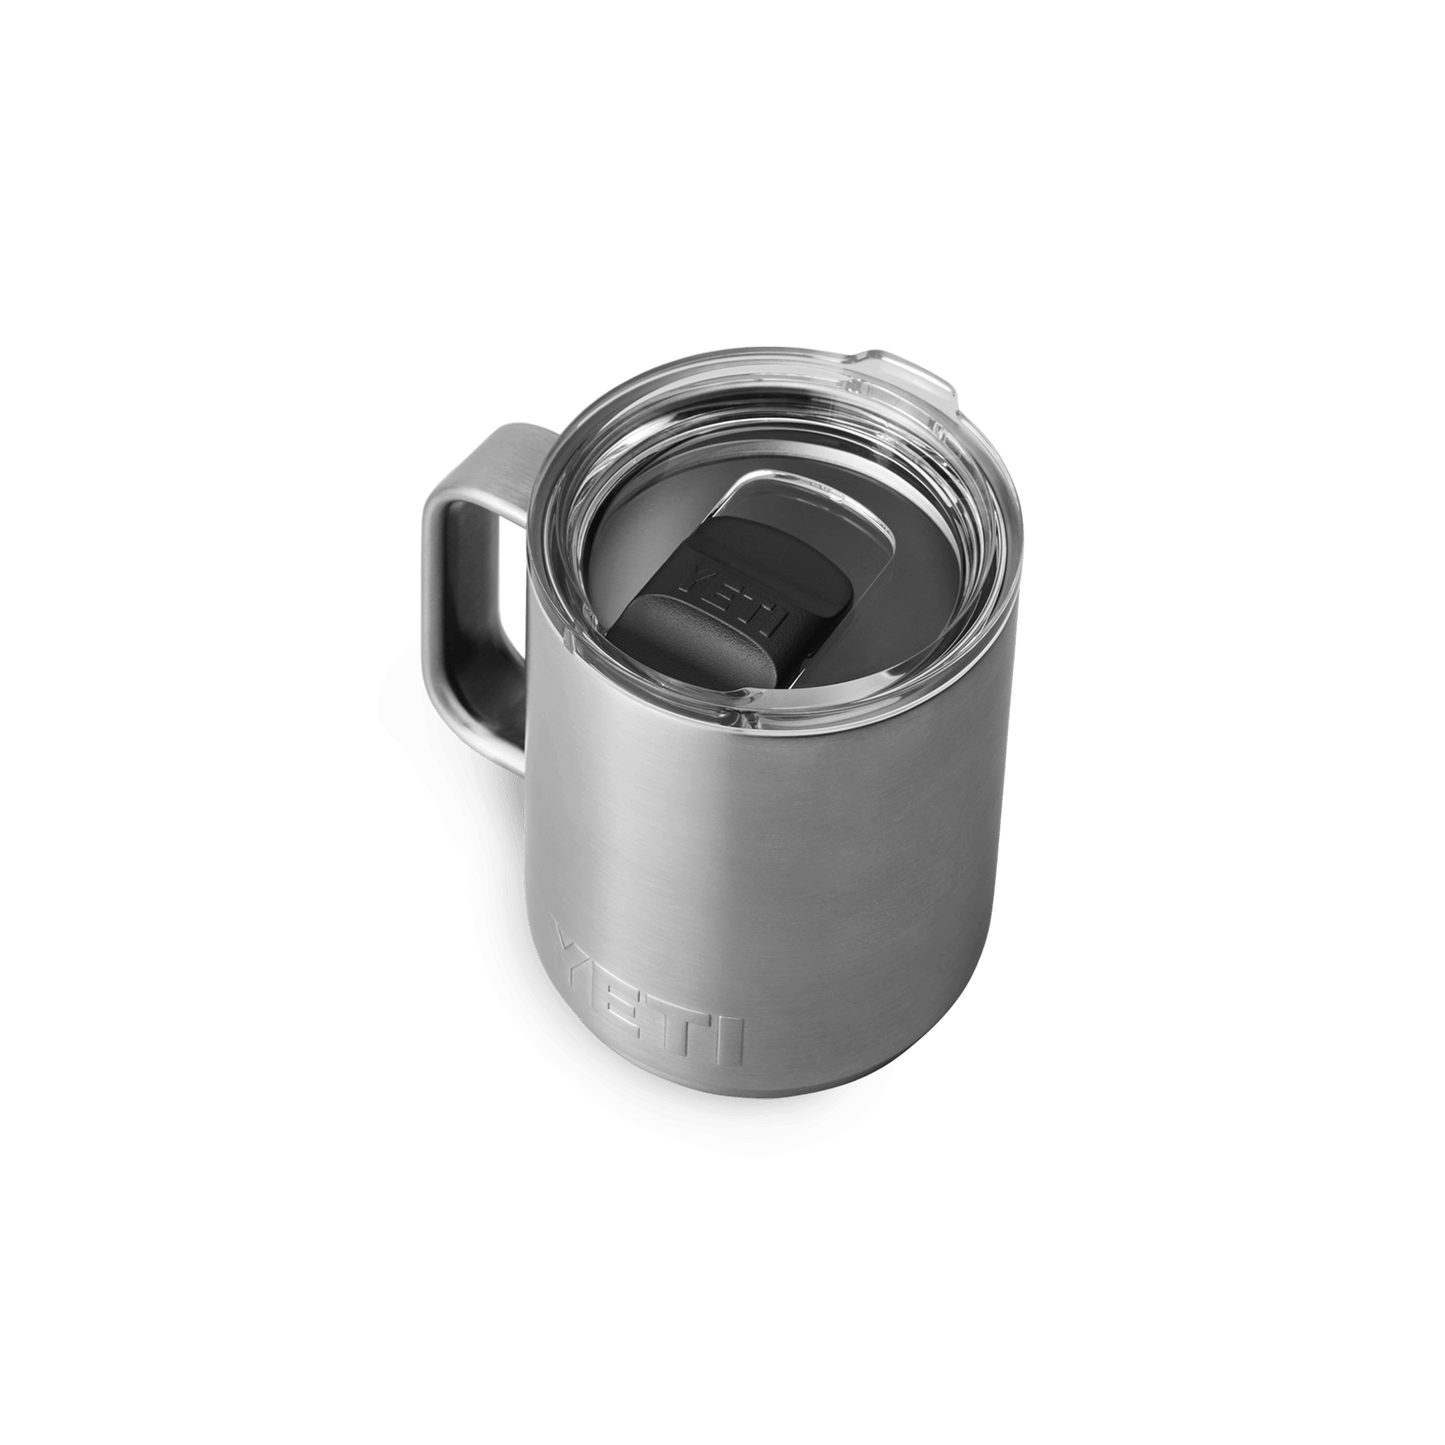 YETI Rambler® 10 oz (296 ml) Stackable Mug Stainless Steel